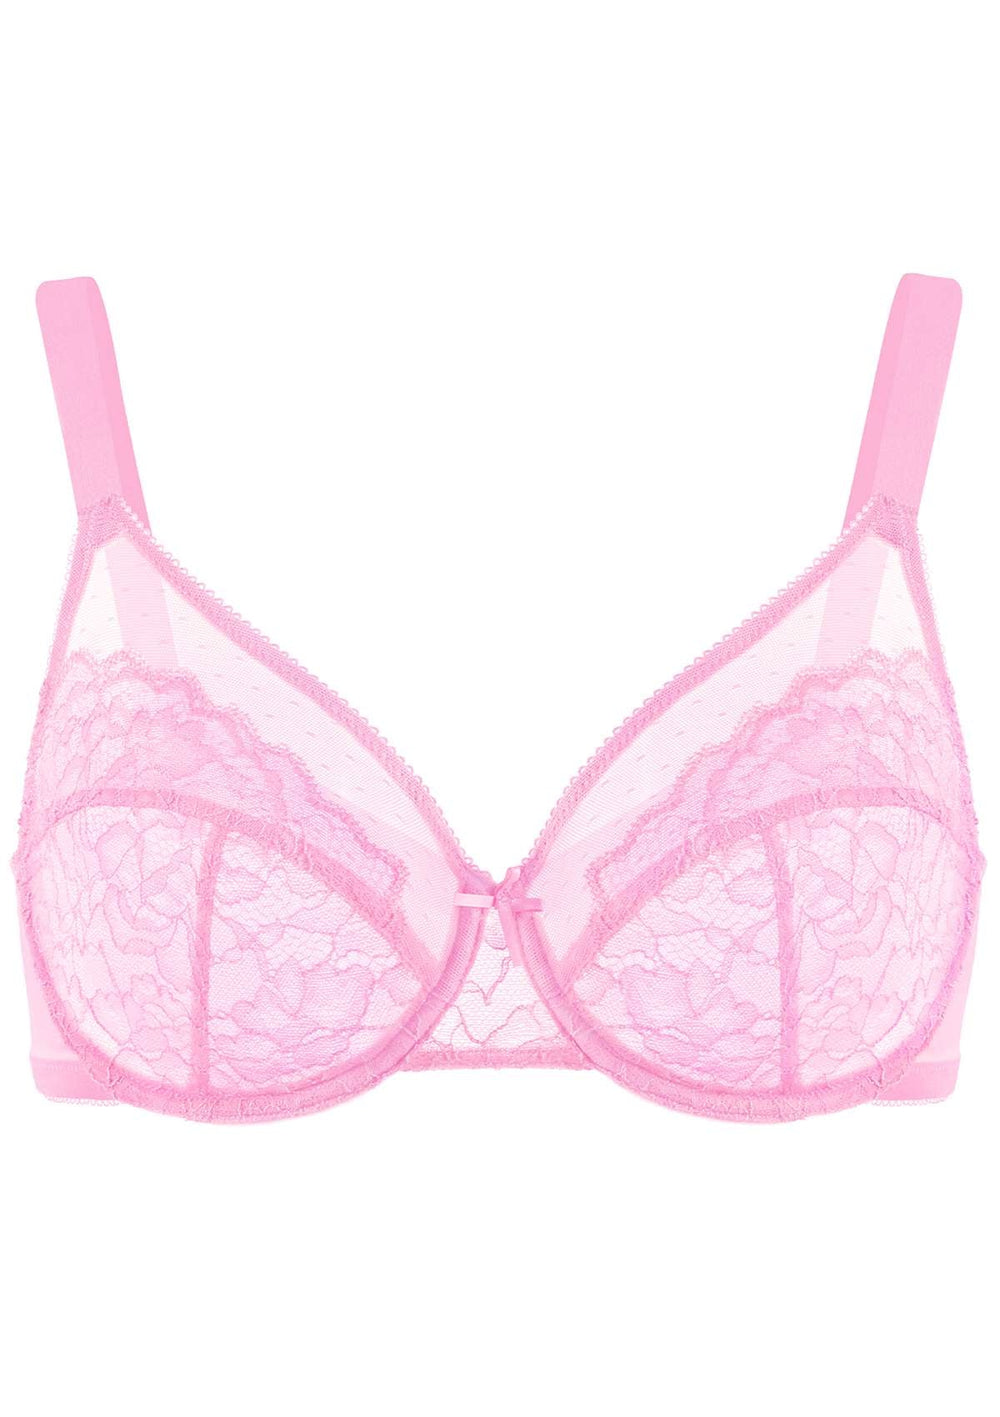 NEW PARFAIT AFFINITAS Elena Unlined Wire Lace Bra Size US 34D Pink